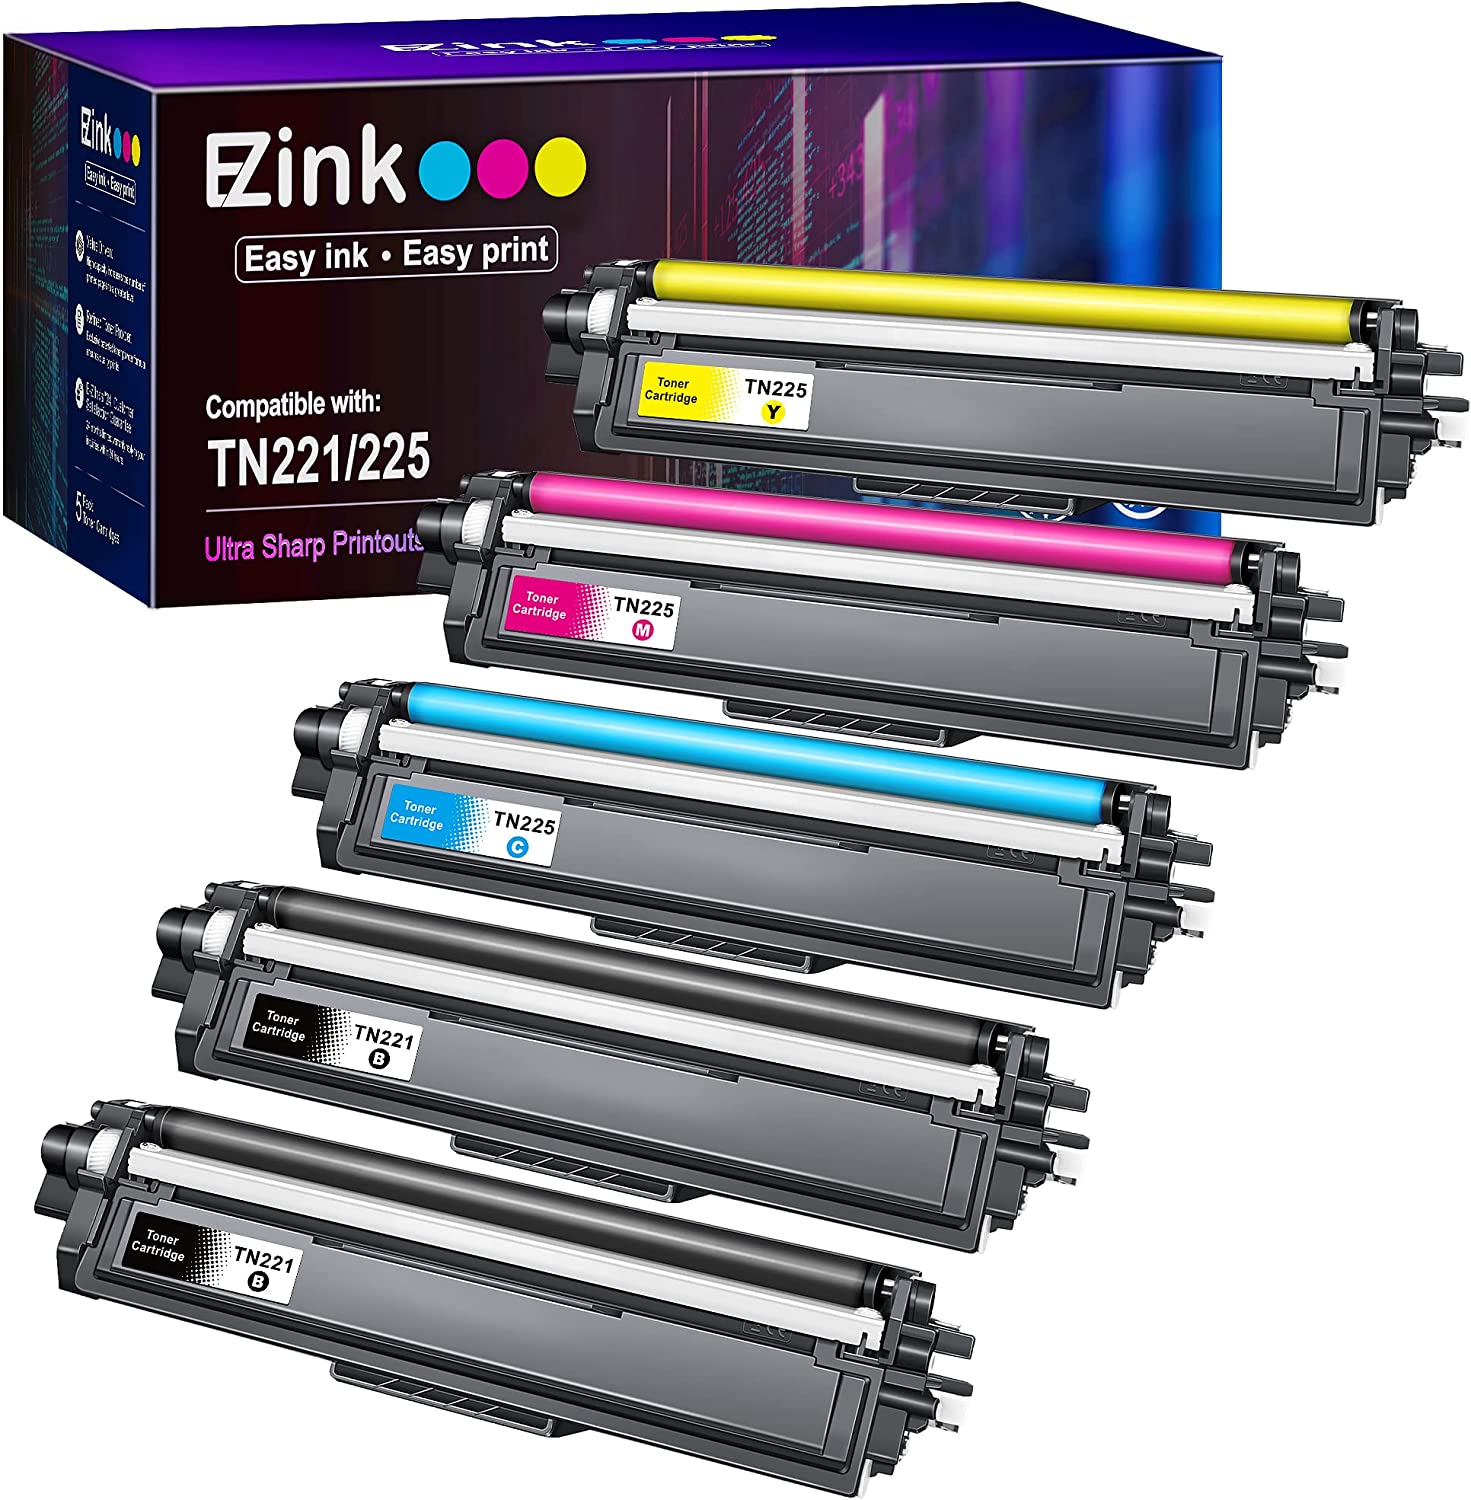 E-Z 잉크 MFC-9130CW HL-3170CDW HL-3140CW HL-3180CDW MFC-9330CDW 2개의 블랙 1개의 시안 마젠타 옐로우 5개의 팩